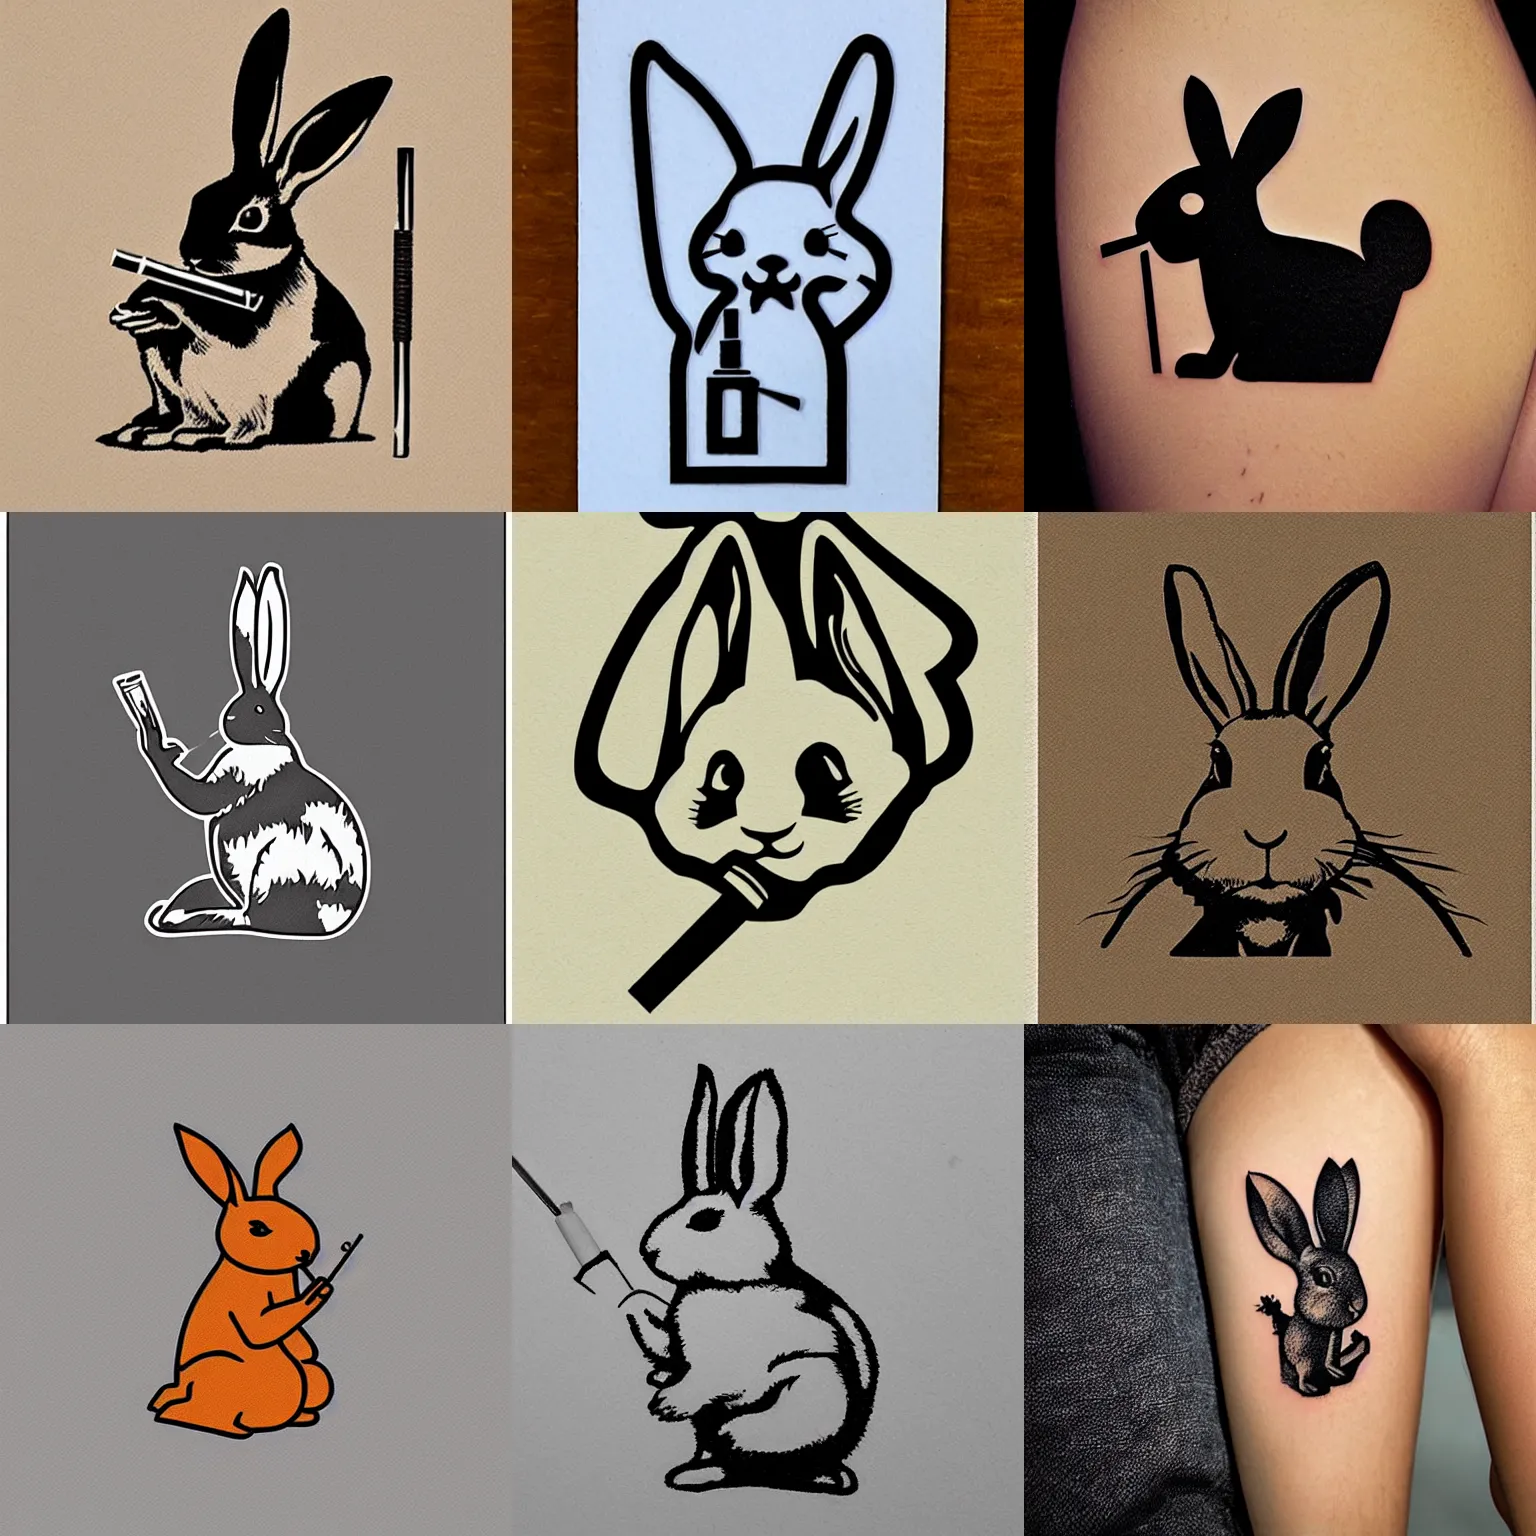 Prompt: rabbit smoking a cigarette stencil tattoo